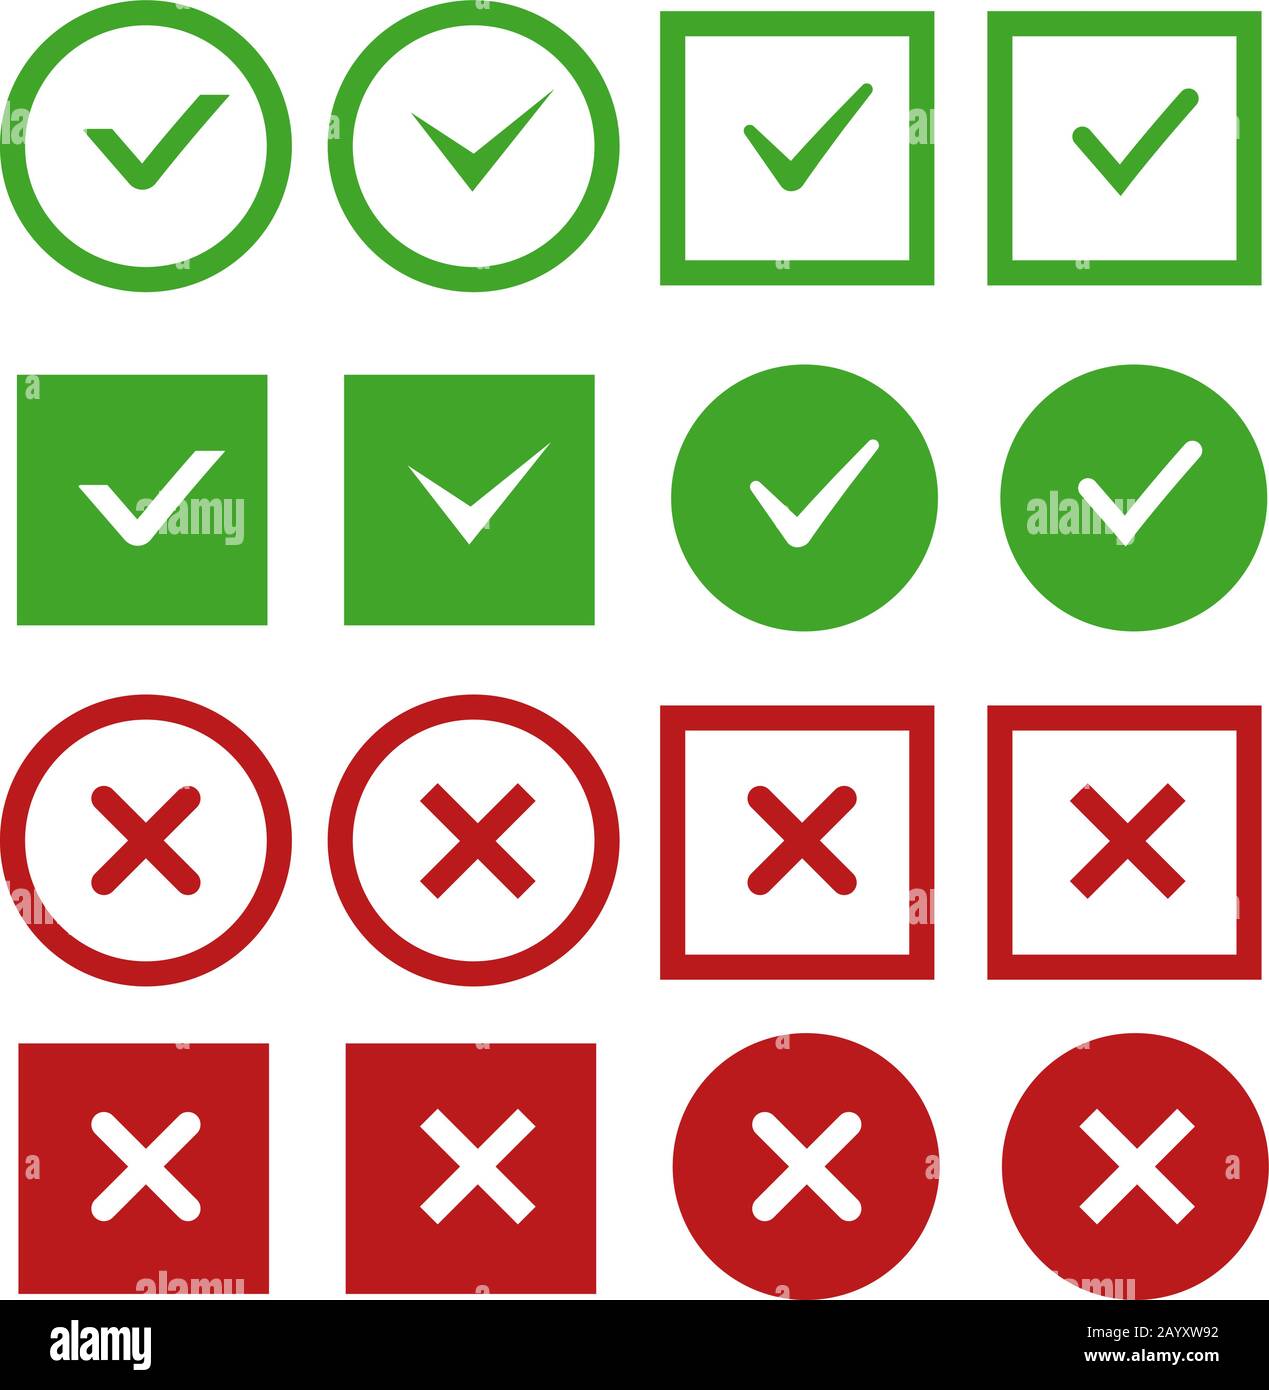 Grüne Häkchen und rote Kreuze Vektorschaltflächen oder Symbole. Mit Nein und Ja markieren. Prüfen Sie, ob das Häkchen korrekt und negativ ist. Vektorgrafiken Stock Vektor